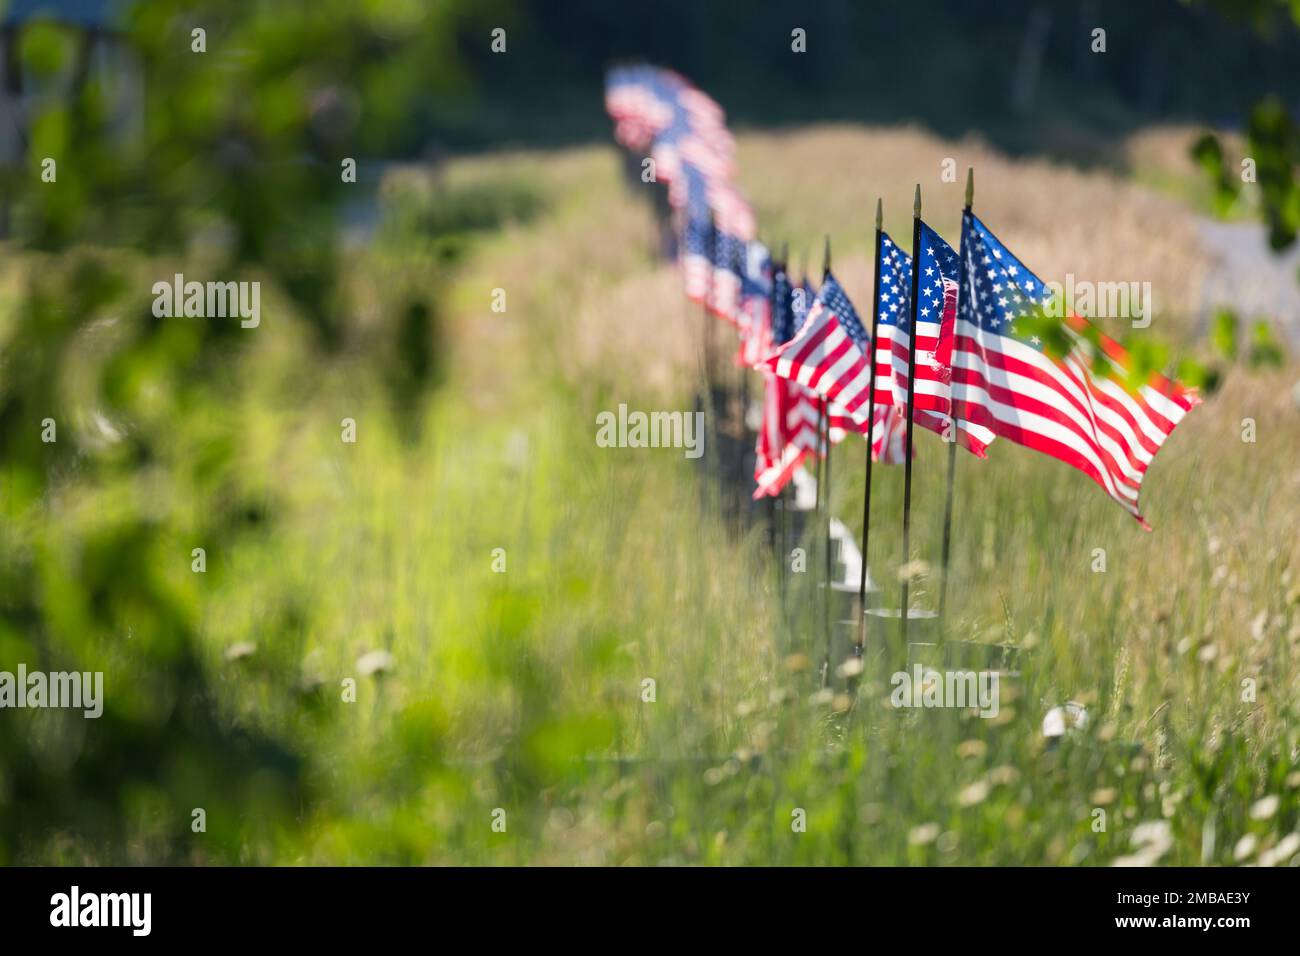 Rangée de drapeaux américains agitant dans le vent le long D'Une clôture. Banque D'Images